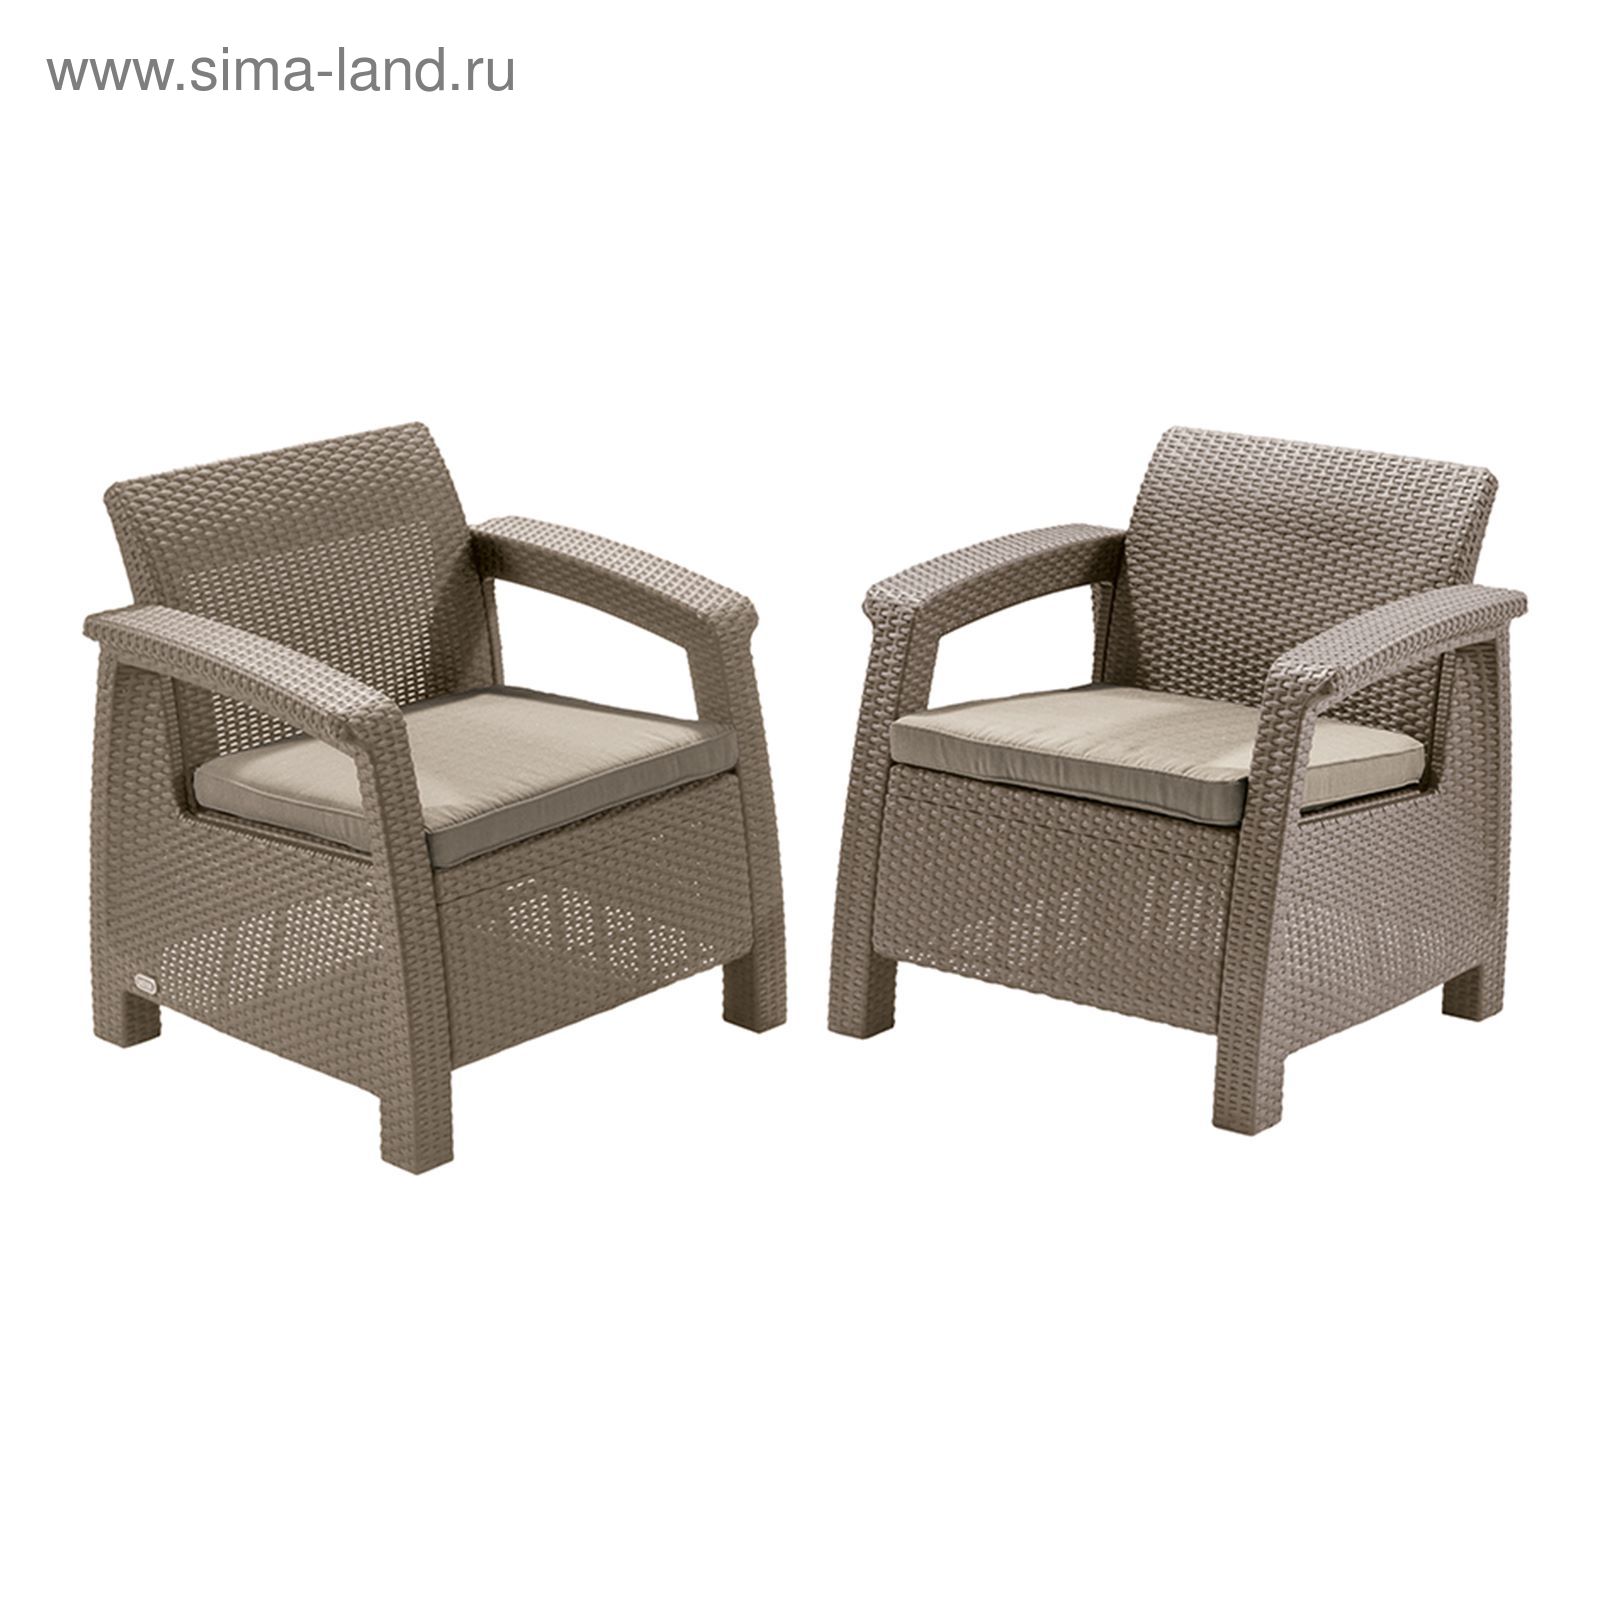 Комплект садовой мебели (2 кресла)   Yalta Duo   Цвет венге